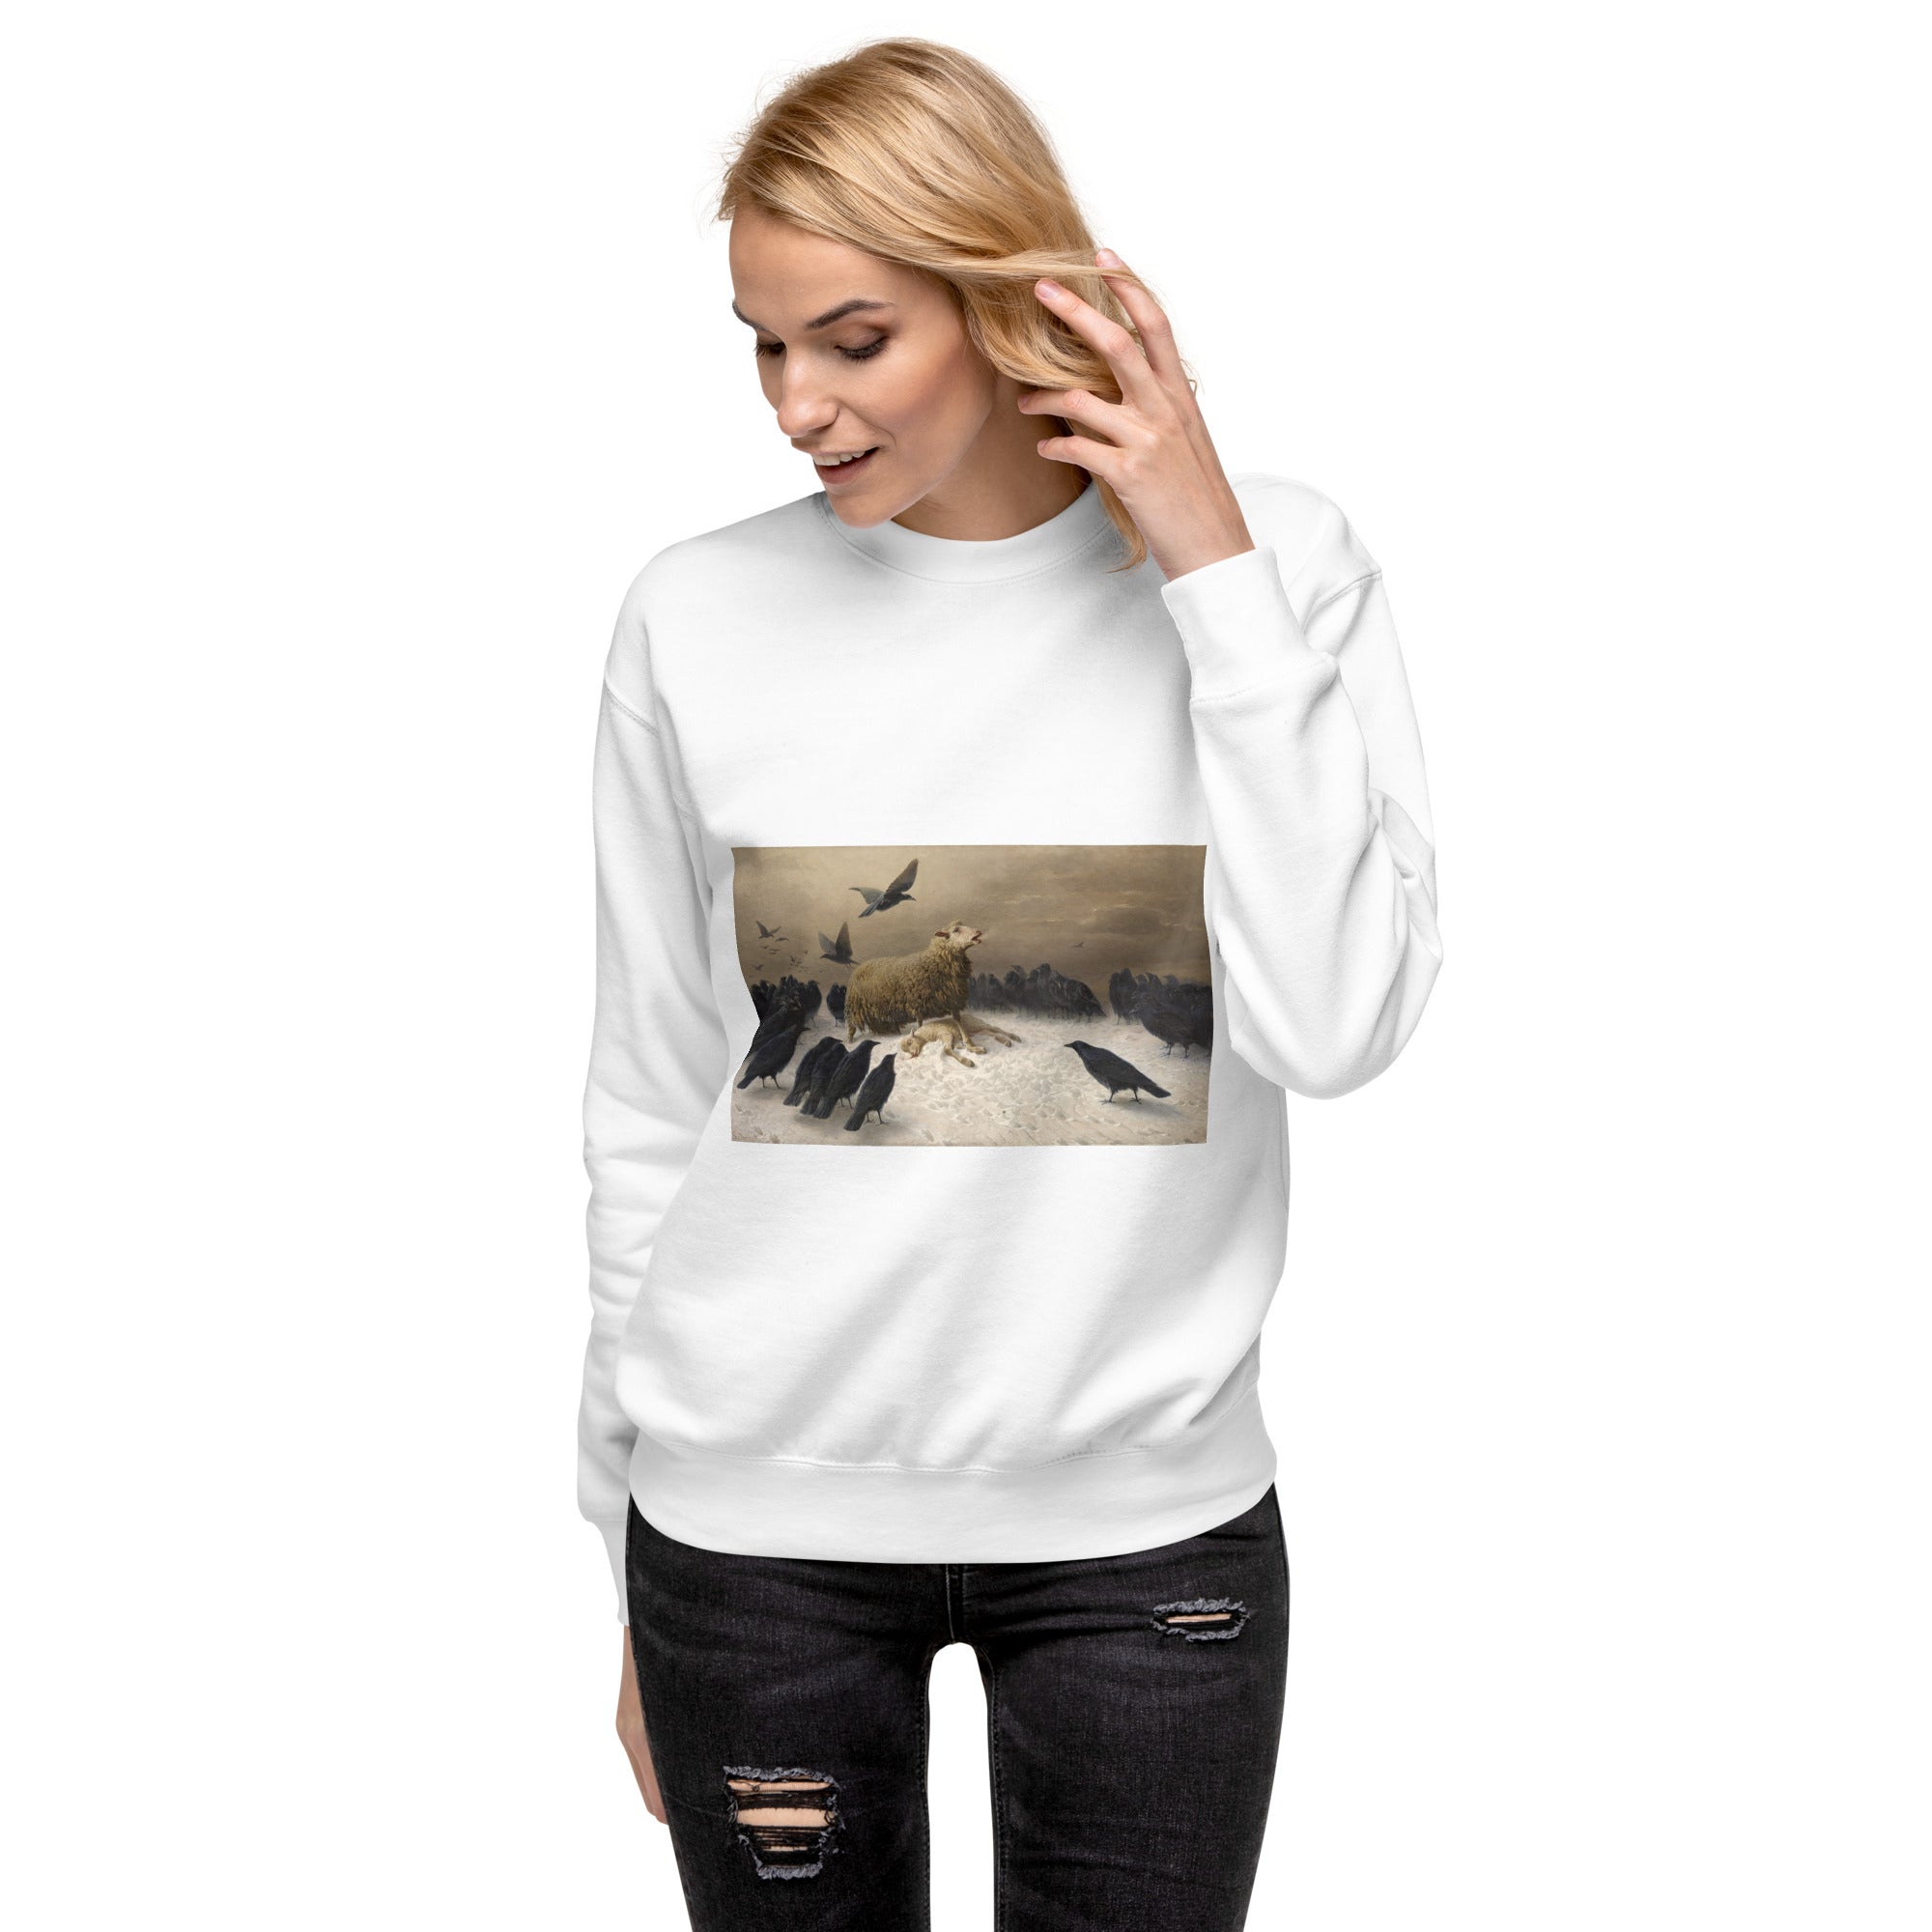 August Friedrich Schenck 'Angst' Berühmtes Gemälde Sweatshirt | Unisex Premium Sweatshirt